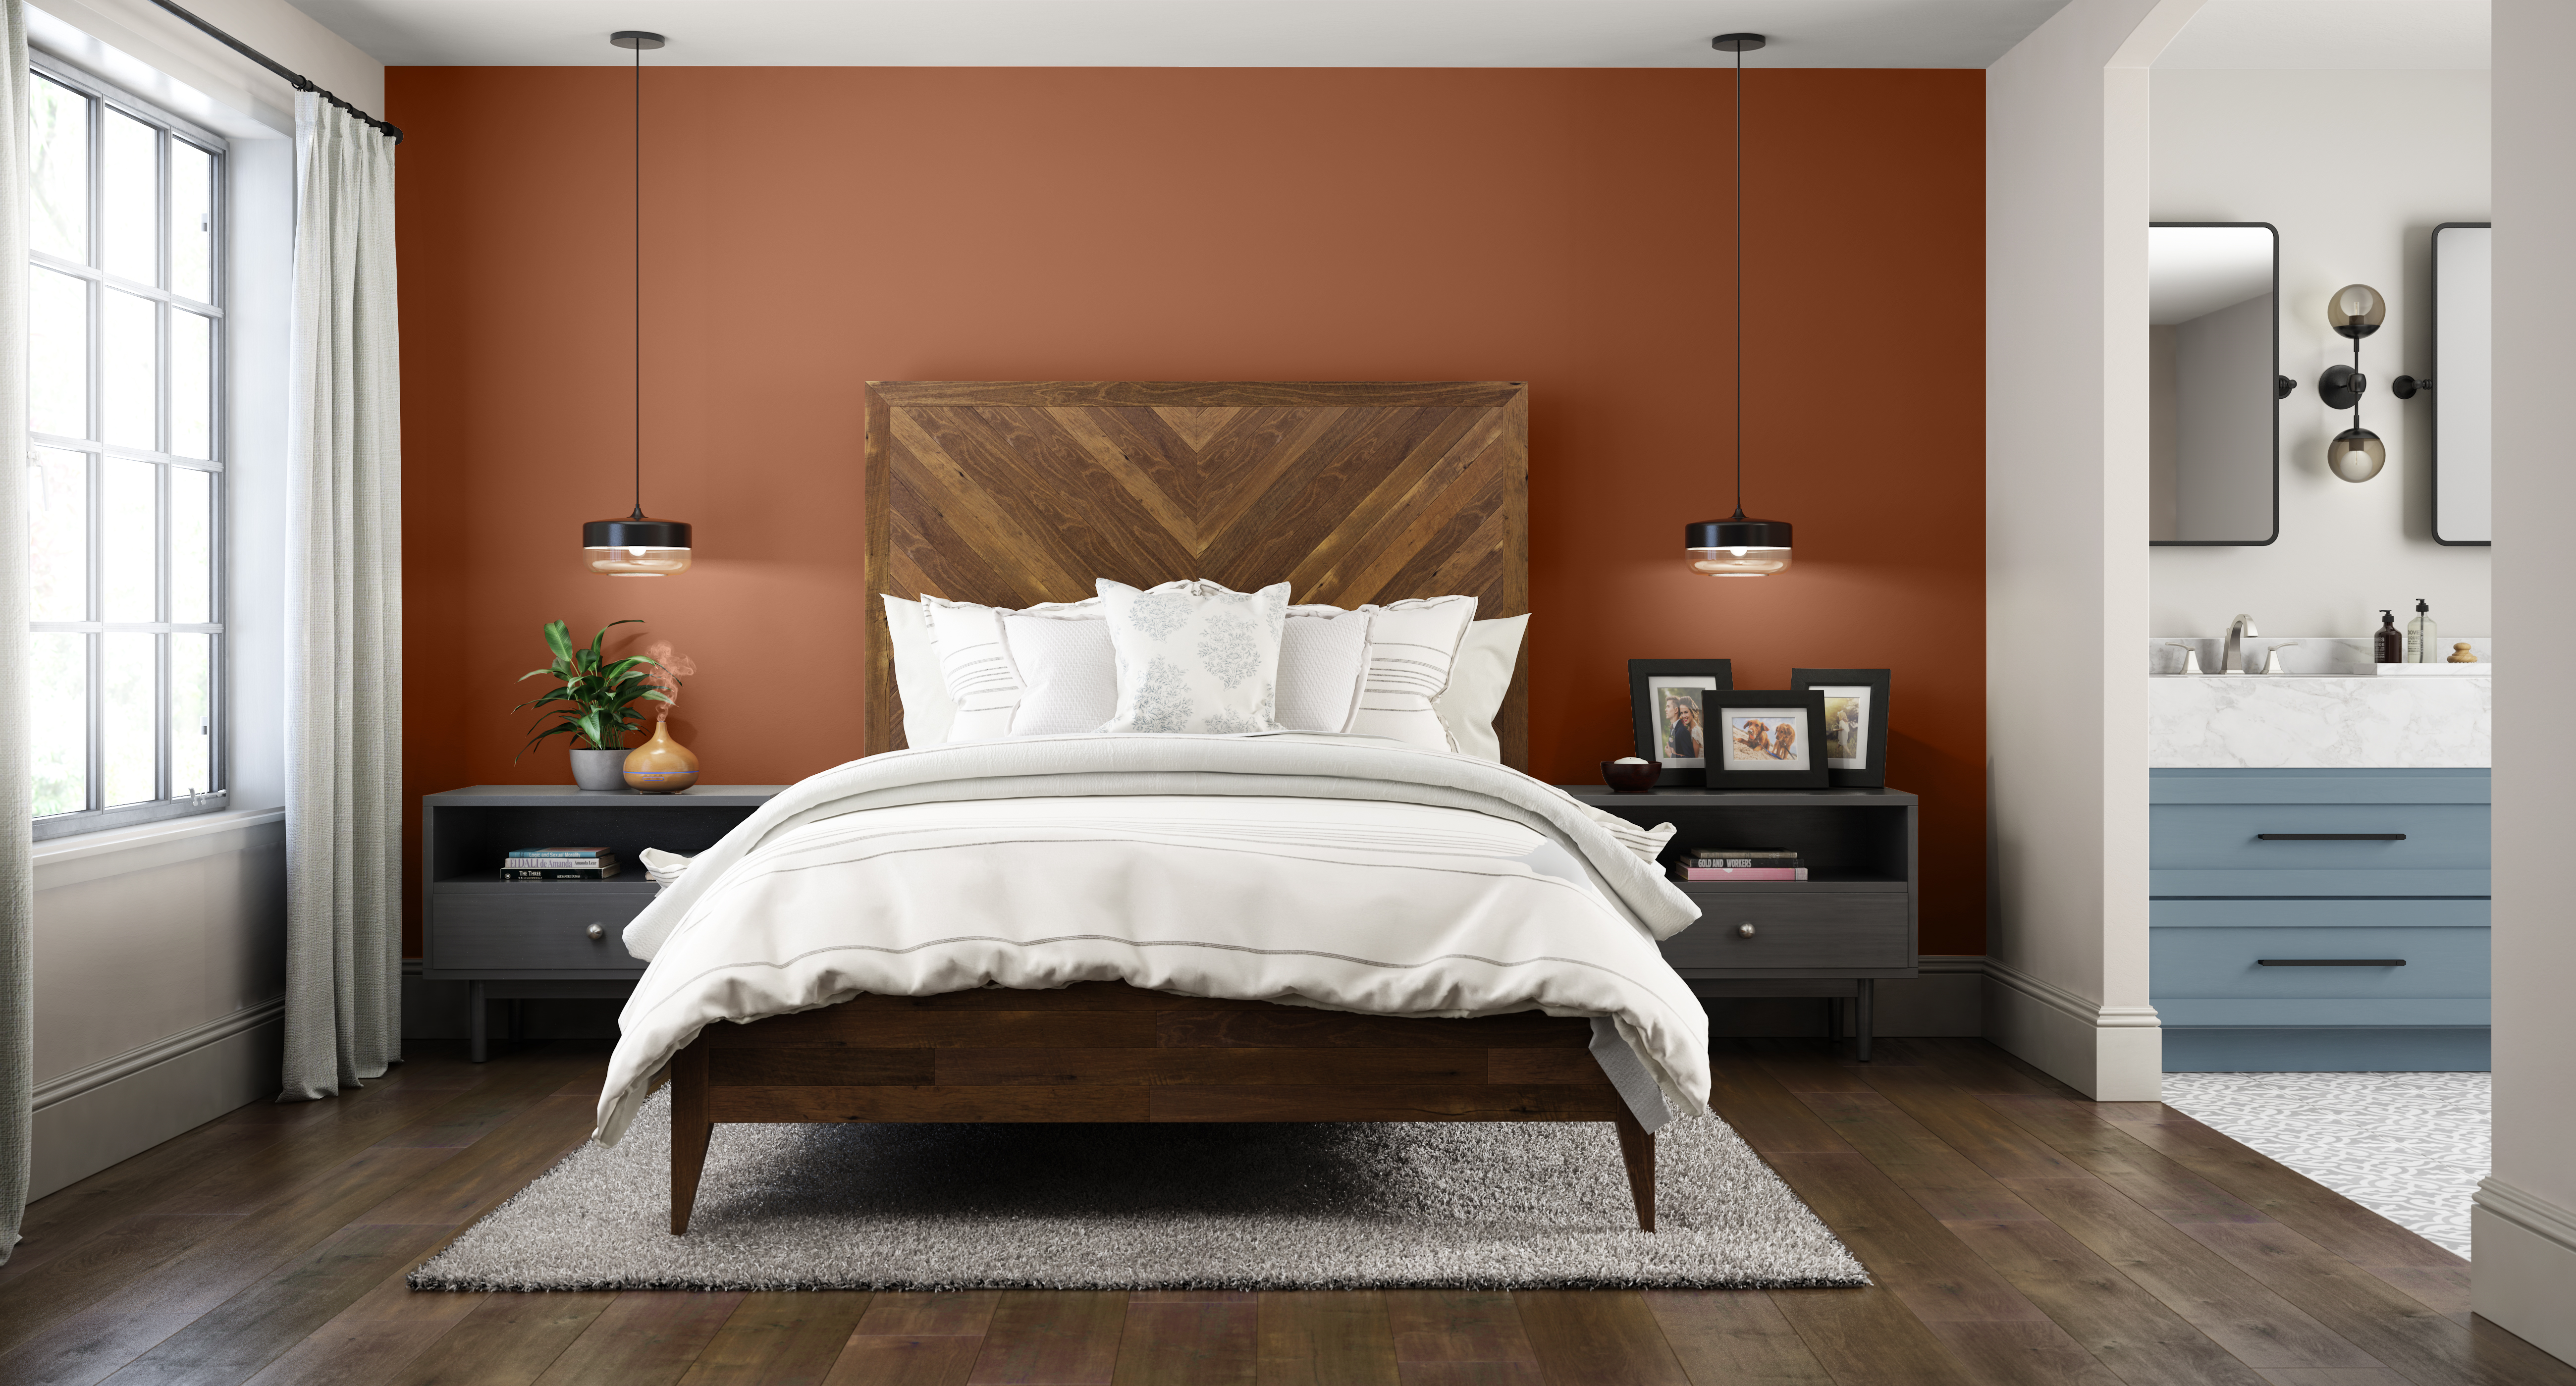 Une chambre à coucher industrielle moderne avec un mur d'accent dans la couleur Flambé à l’orange 